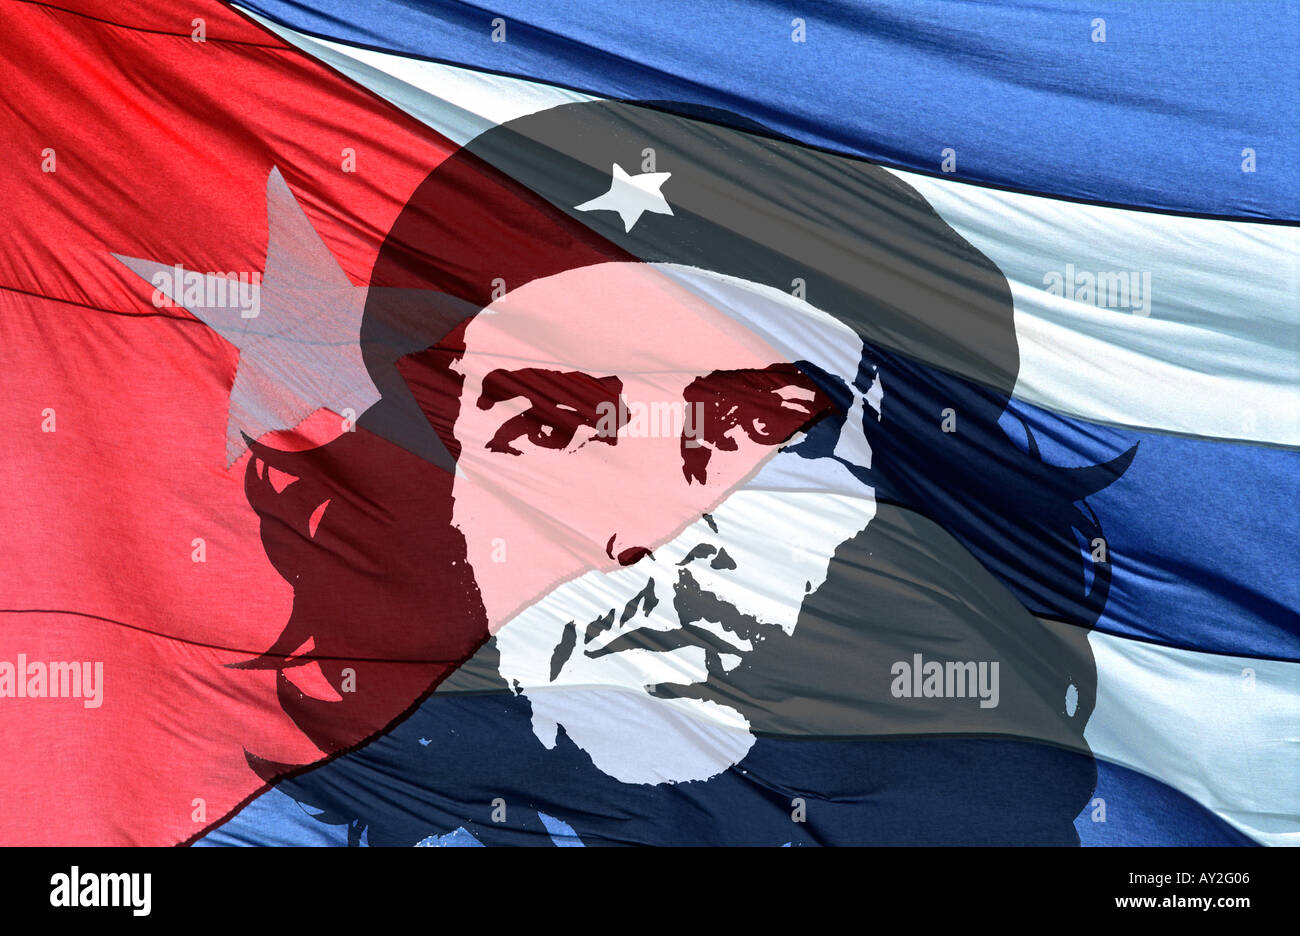 Rouge Blanc et bleu coloré détail du drapeau national cubain circulant dans le vent avec Che Guevara recouvrit une icône mondiale CUBA Banque D'Images